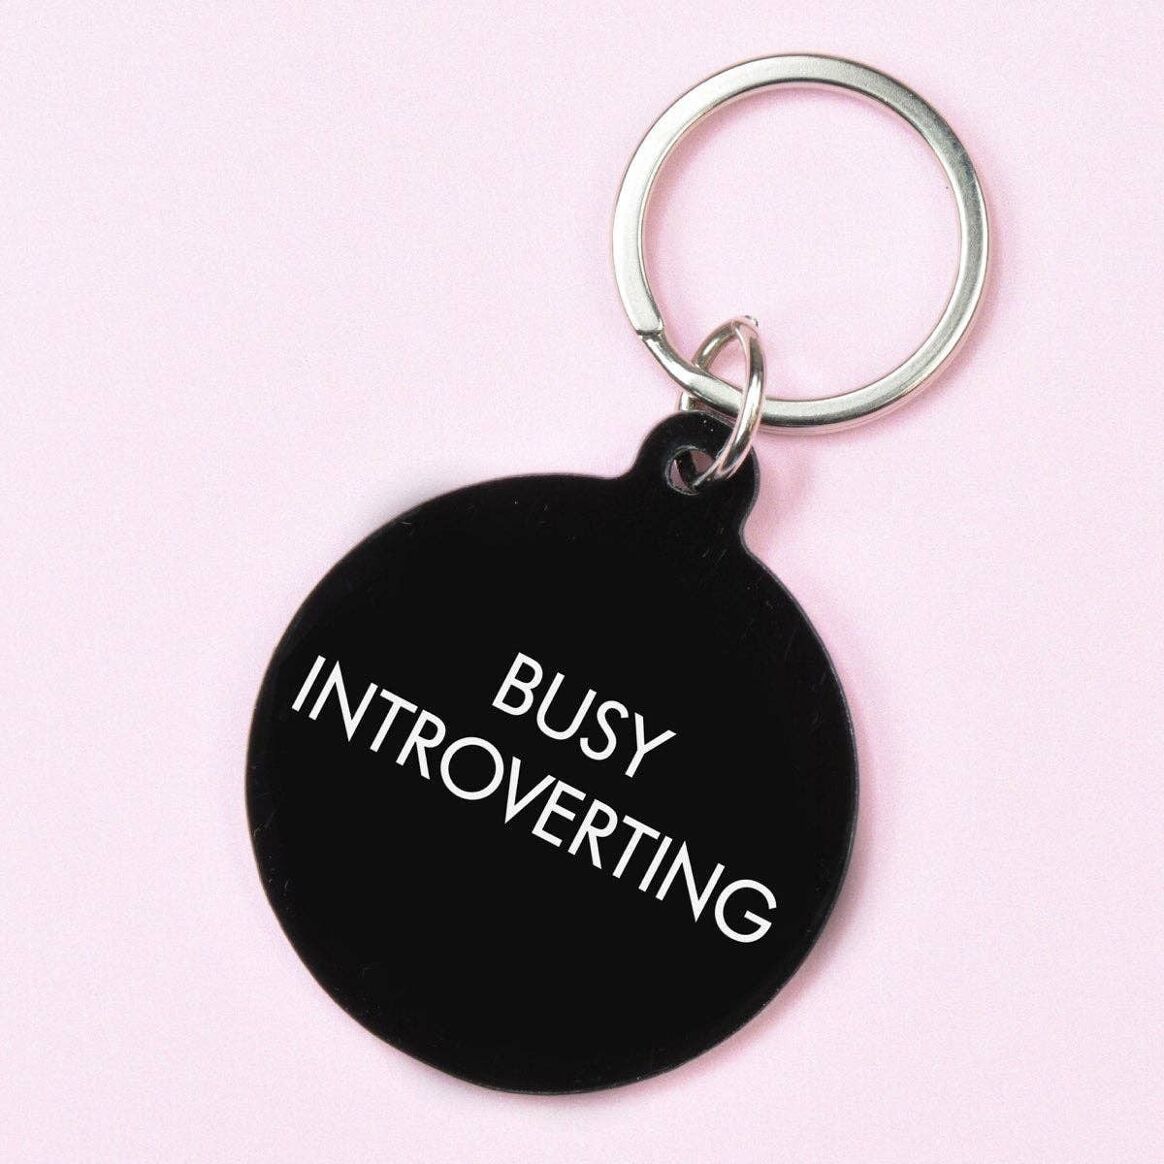 Schlüsselanhänger "Busy introverting"